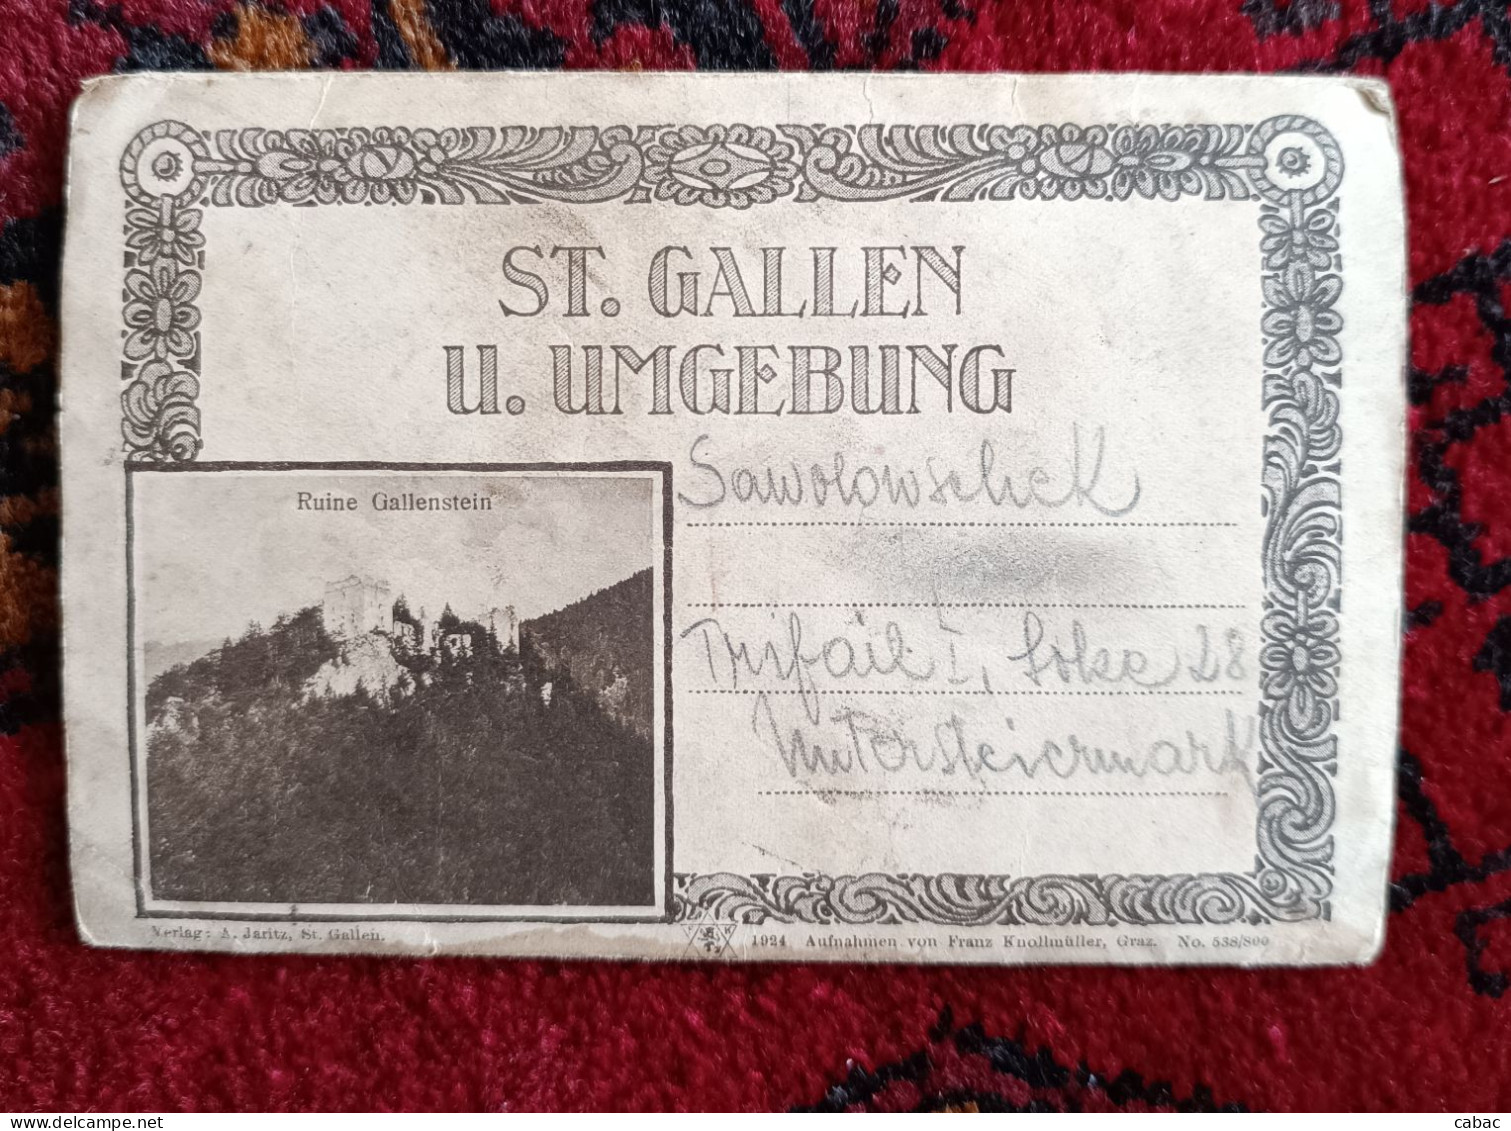 10 postcards lot, St. Gallen u. umgebung, A. Jaritz, Gallenstein, Spitzenbachgraben, Weissenbach, Kassegg, etc.